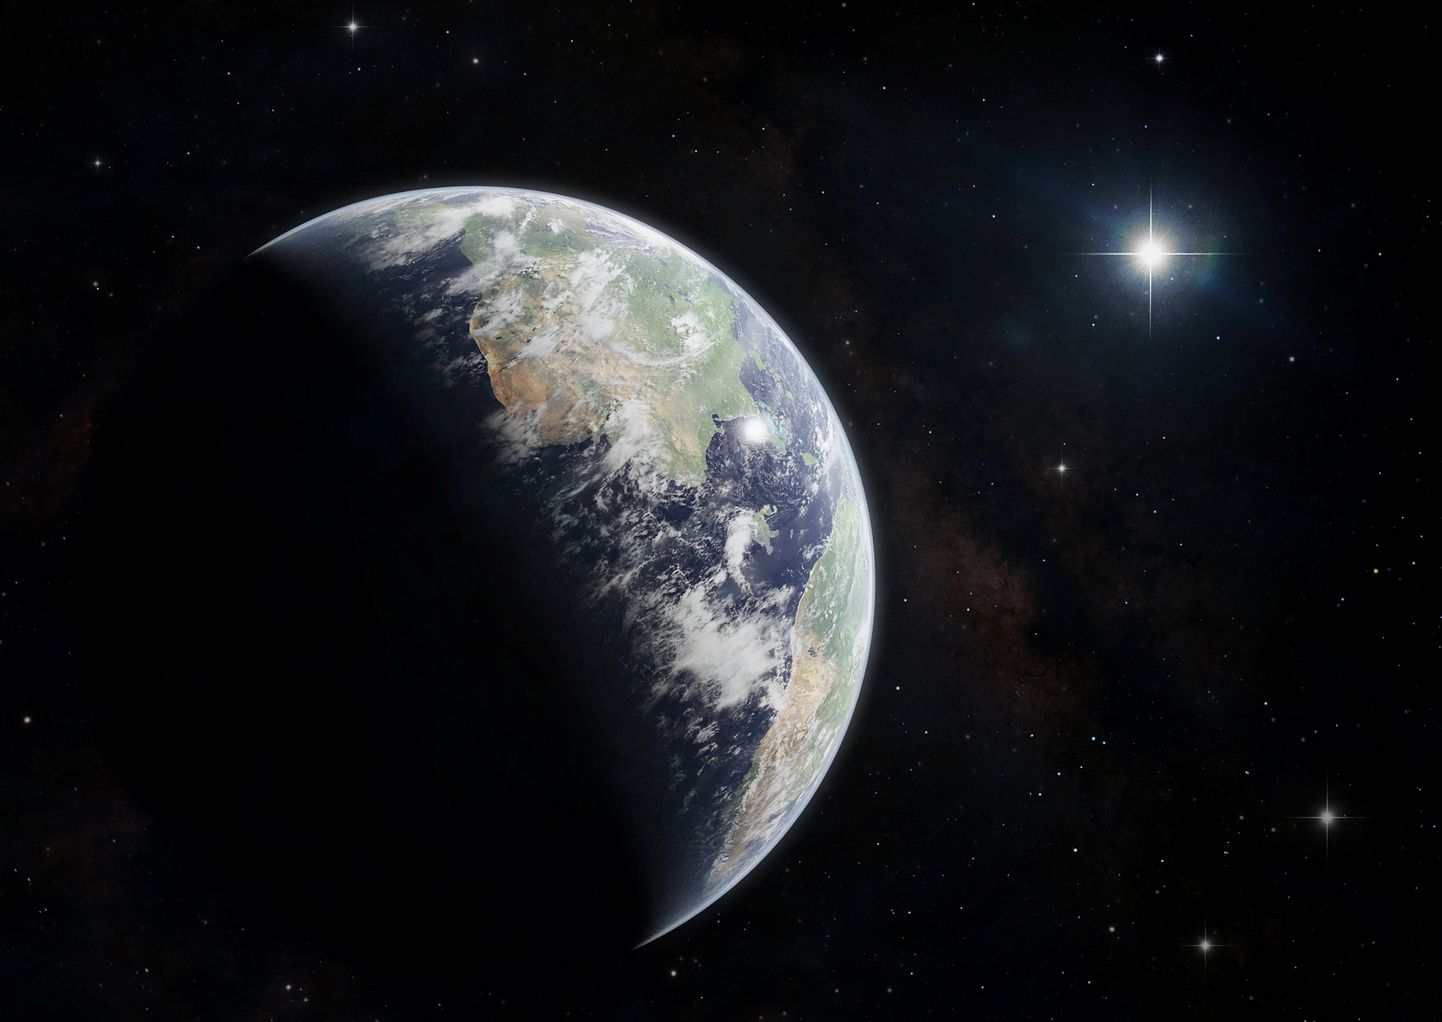 Pildil on kujutatud Supernoova plahvatust, mis võib mõjutada lähedal olevat Maa sarnast planeeti.